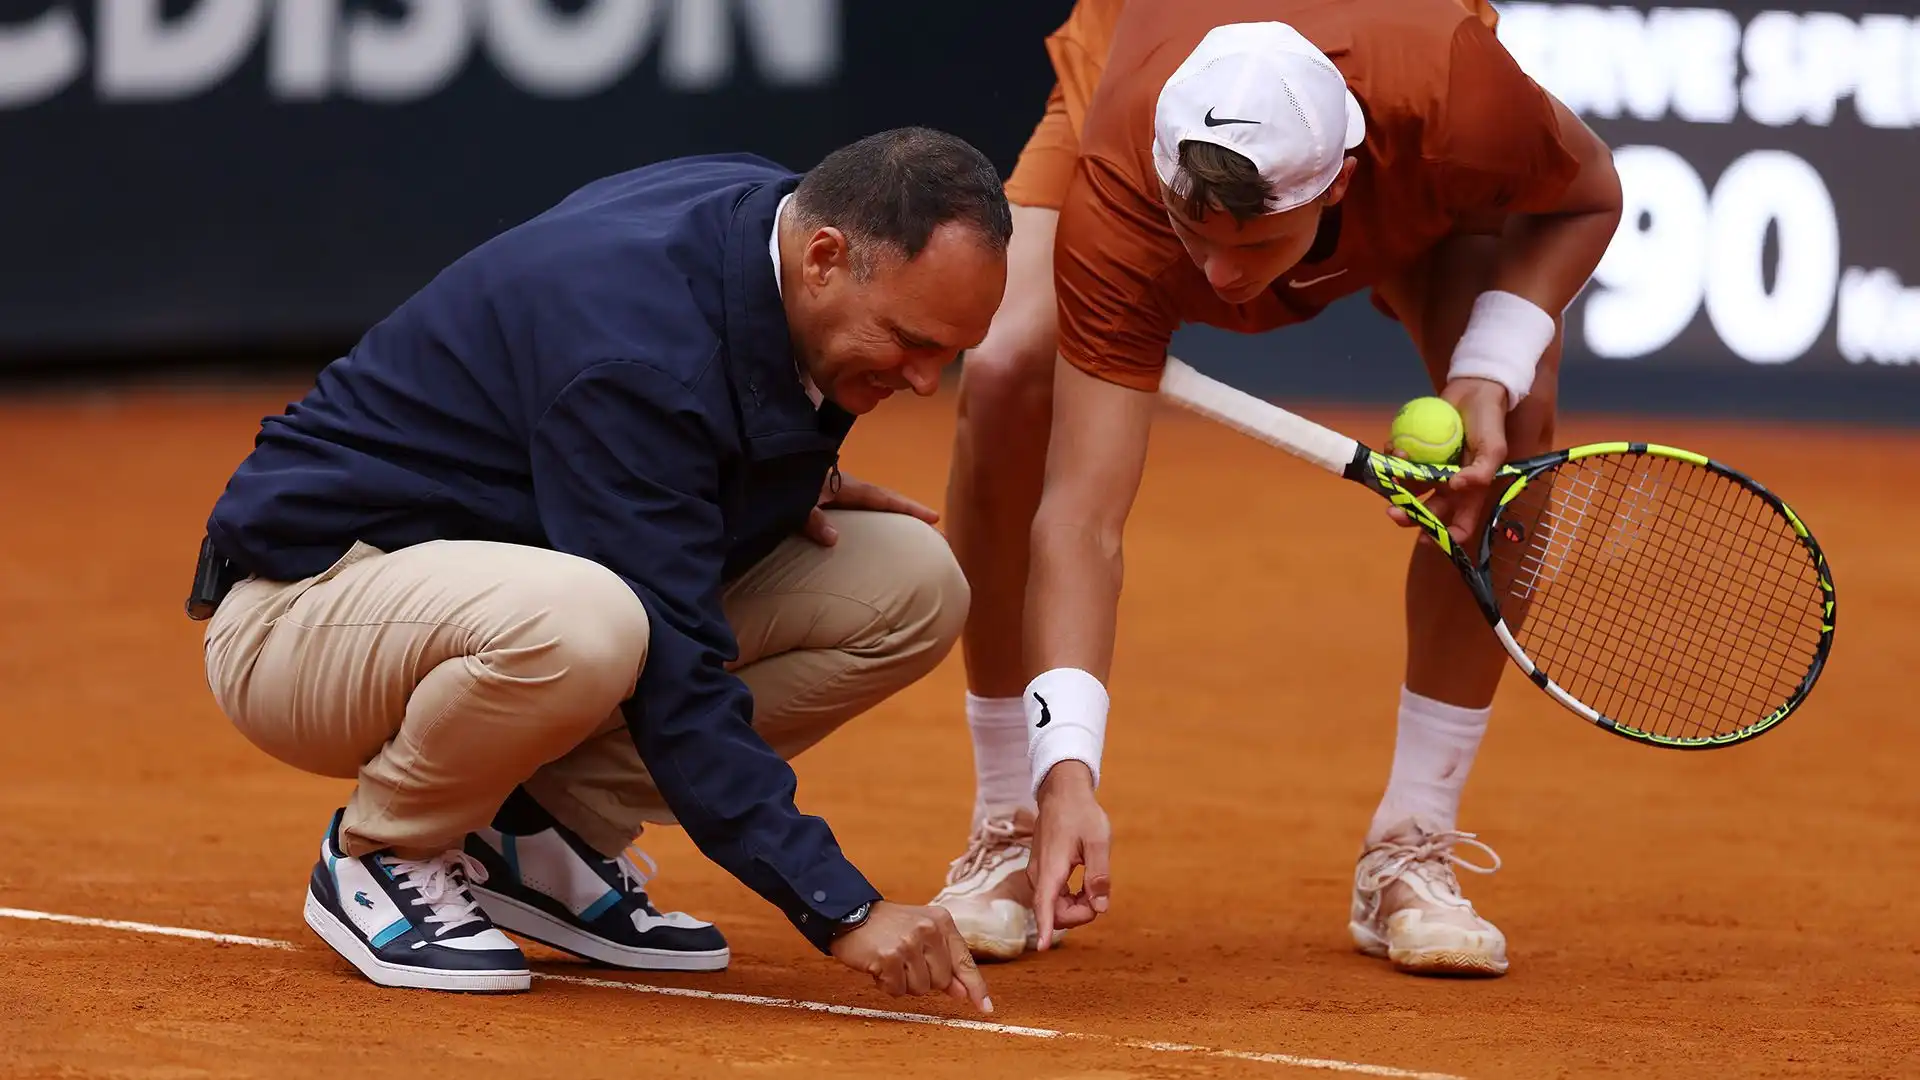 Il tennista danese si è arrabbiato con l'arbitro per un punto contestato